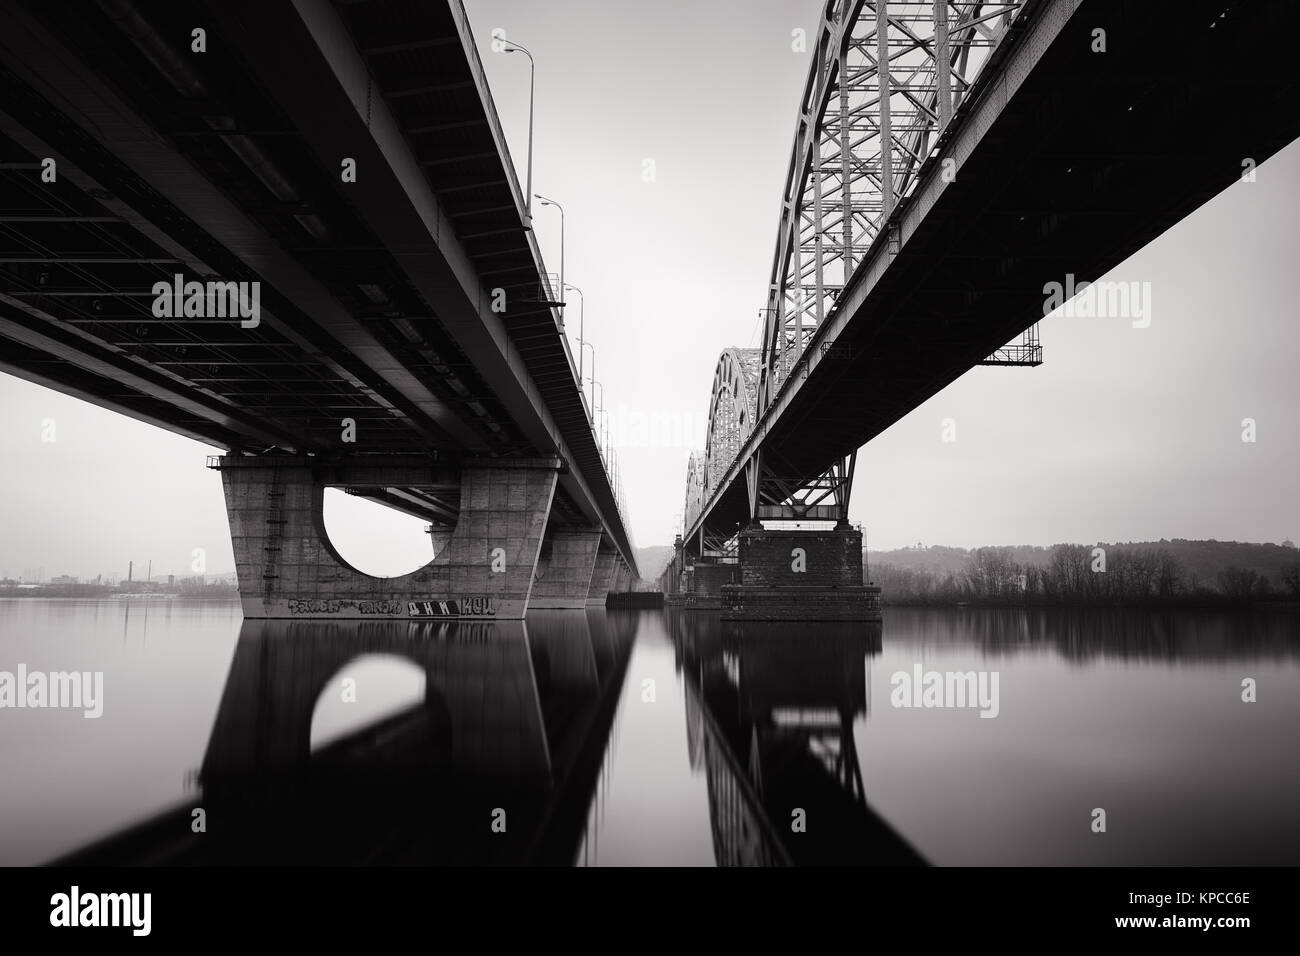 Darnytskyi Bridge in Kiev/ Ukraine in black and white Stock Photo